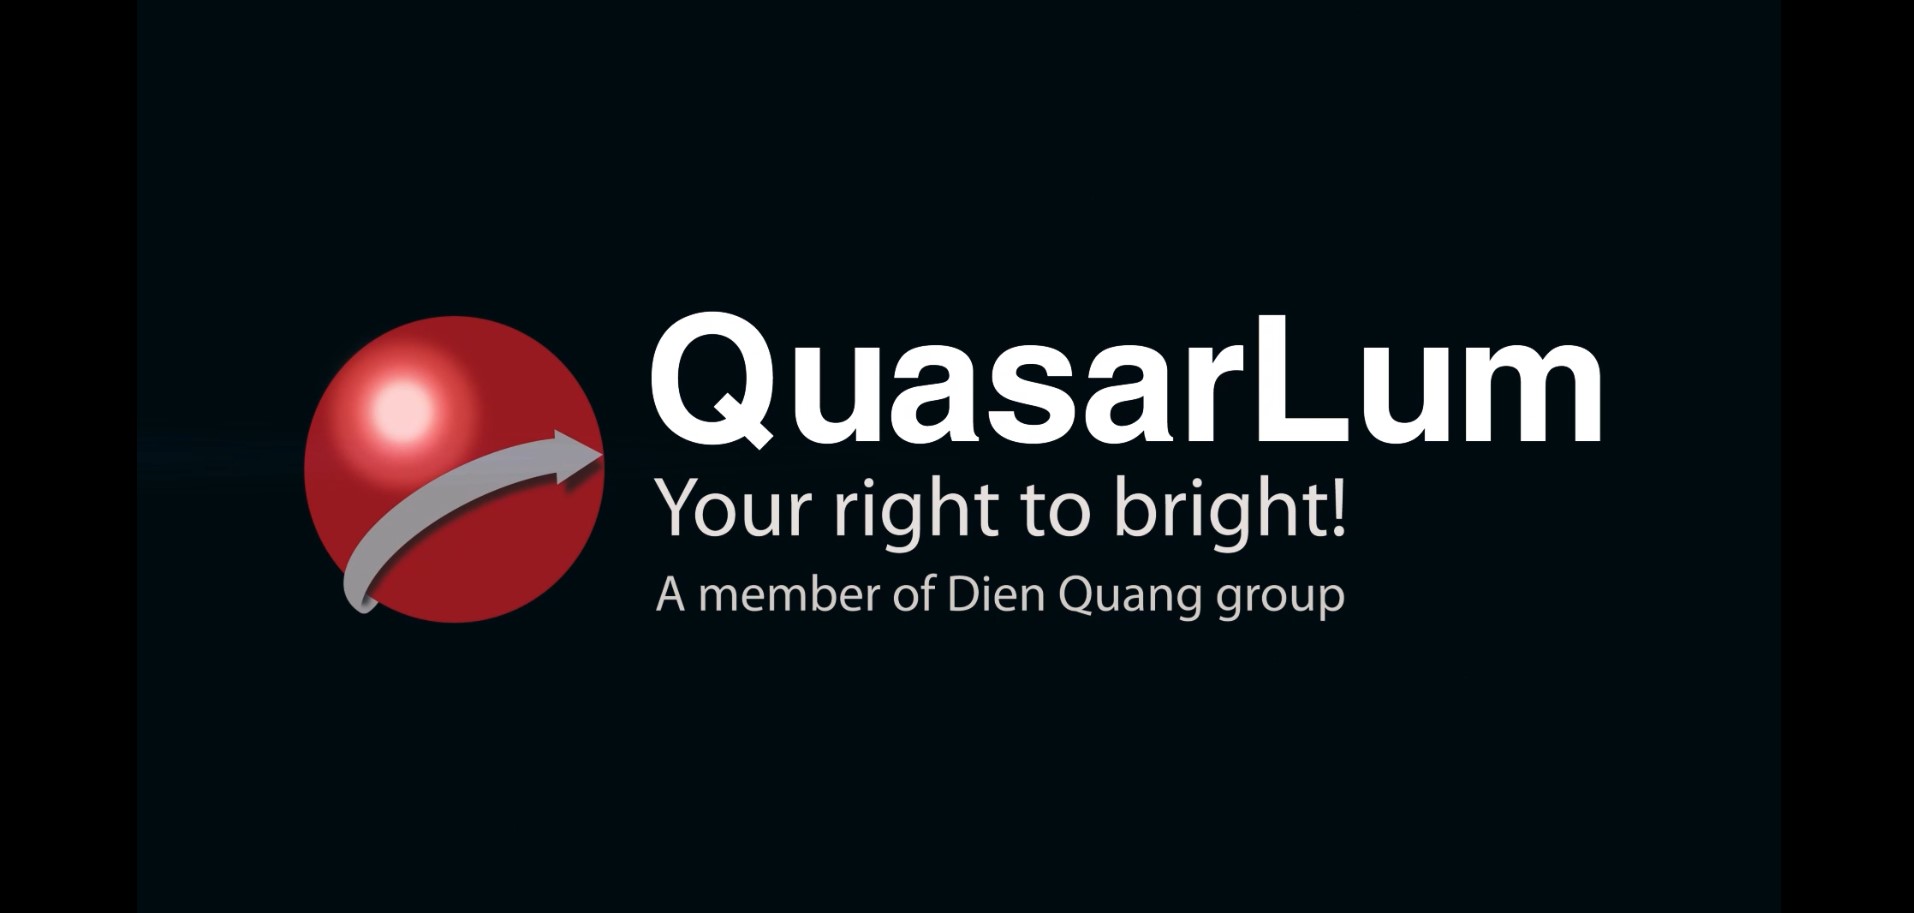 QuasarLum Company